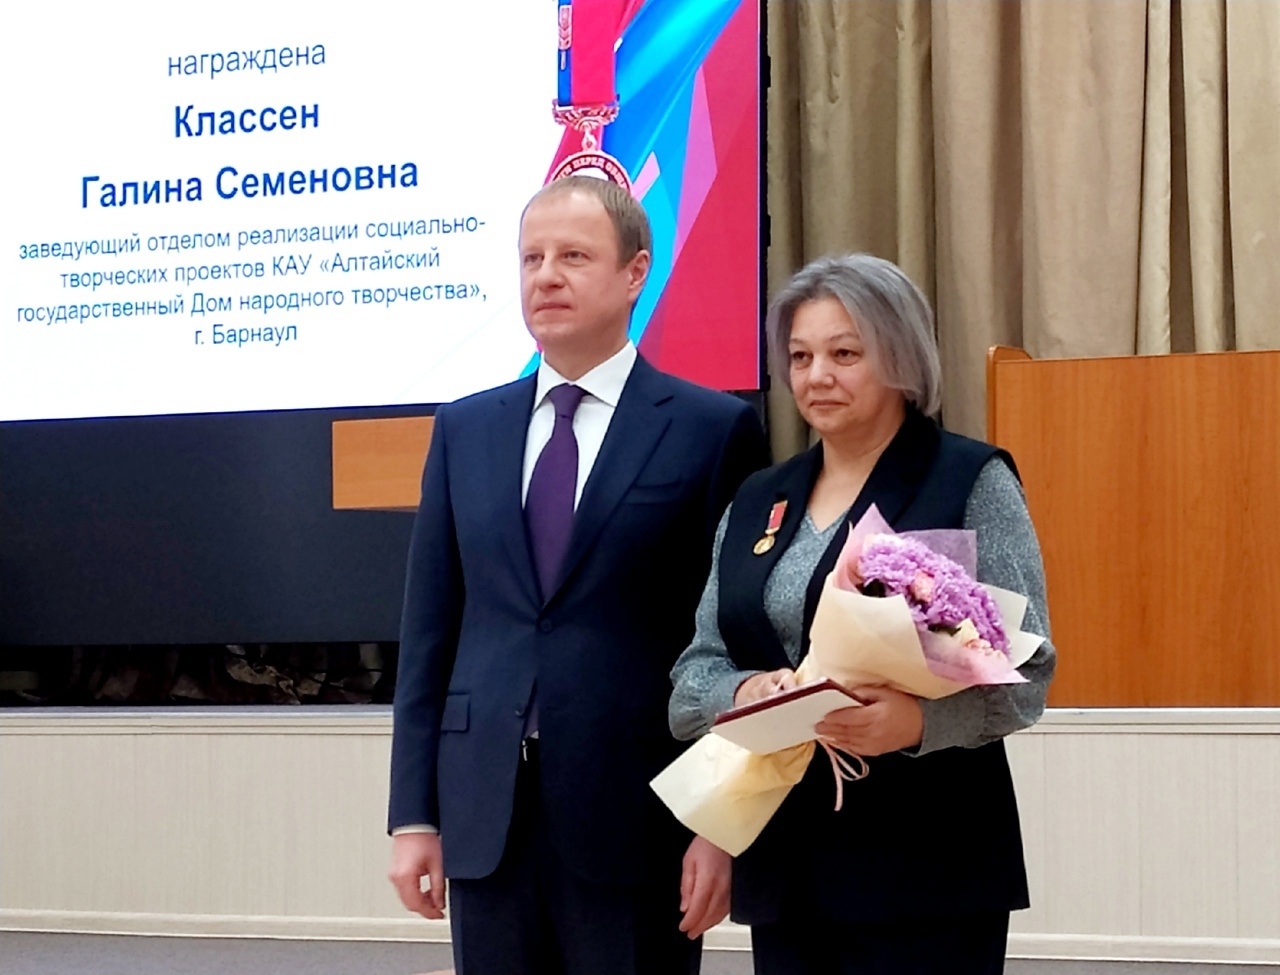 Поздравляем Галину Семёновну Классен с вручением награды Алтайского края!